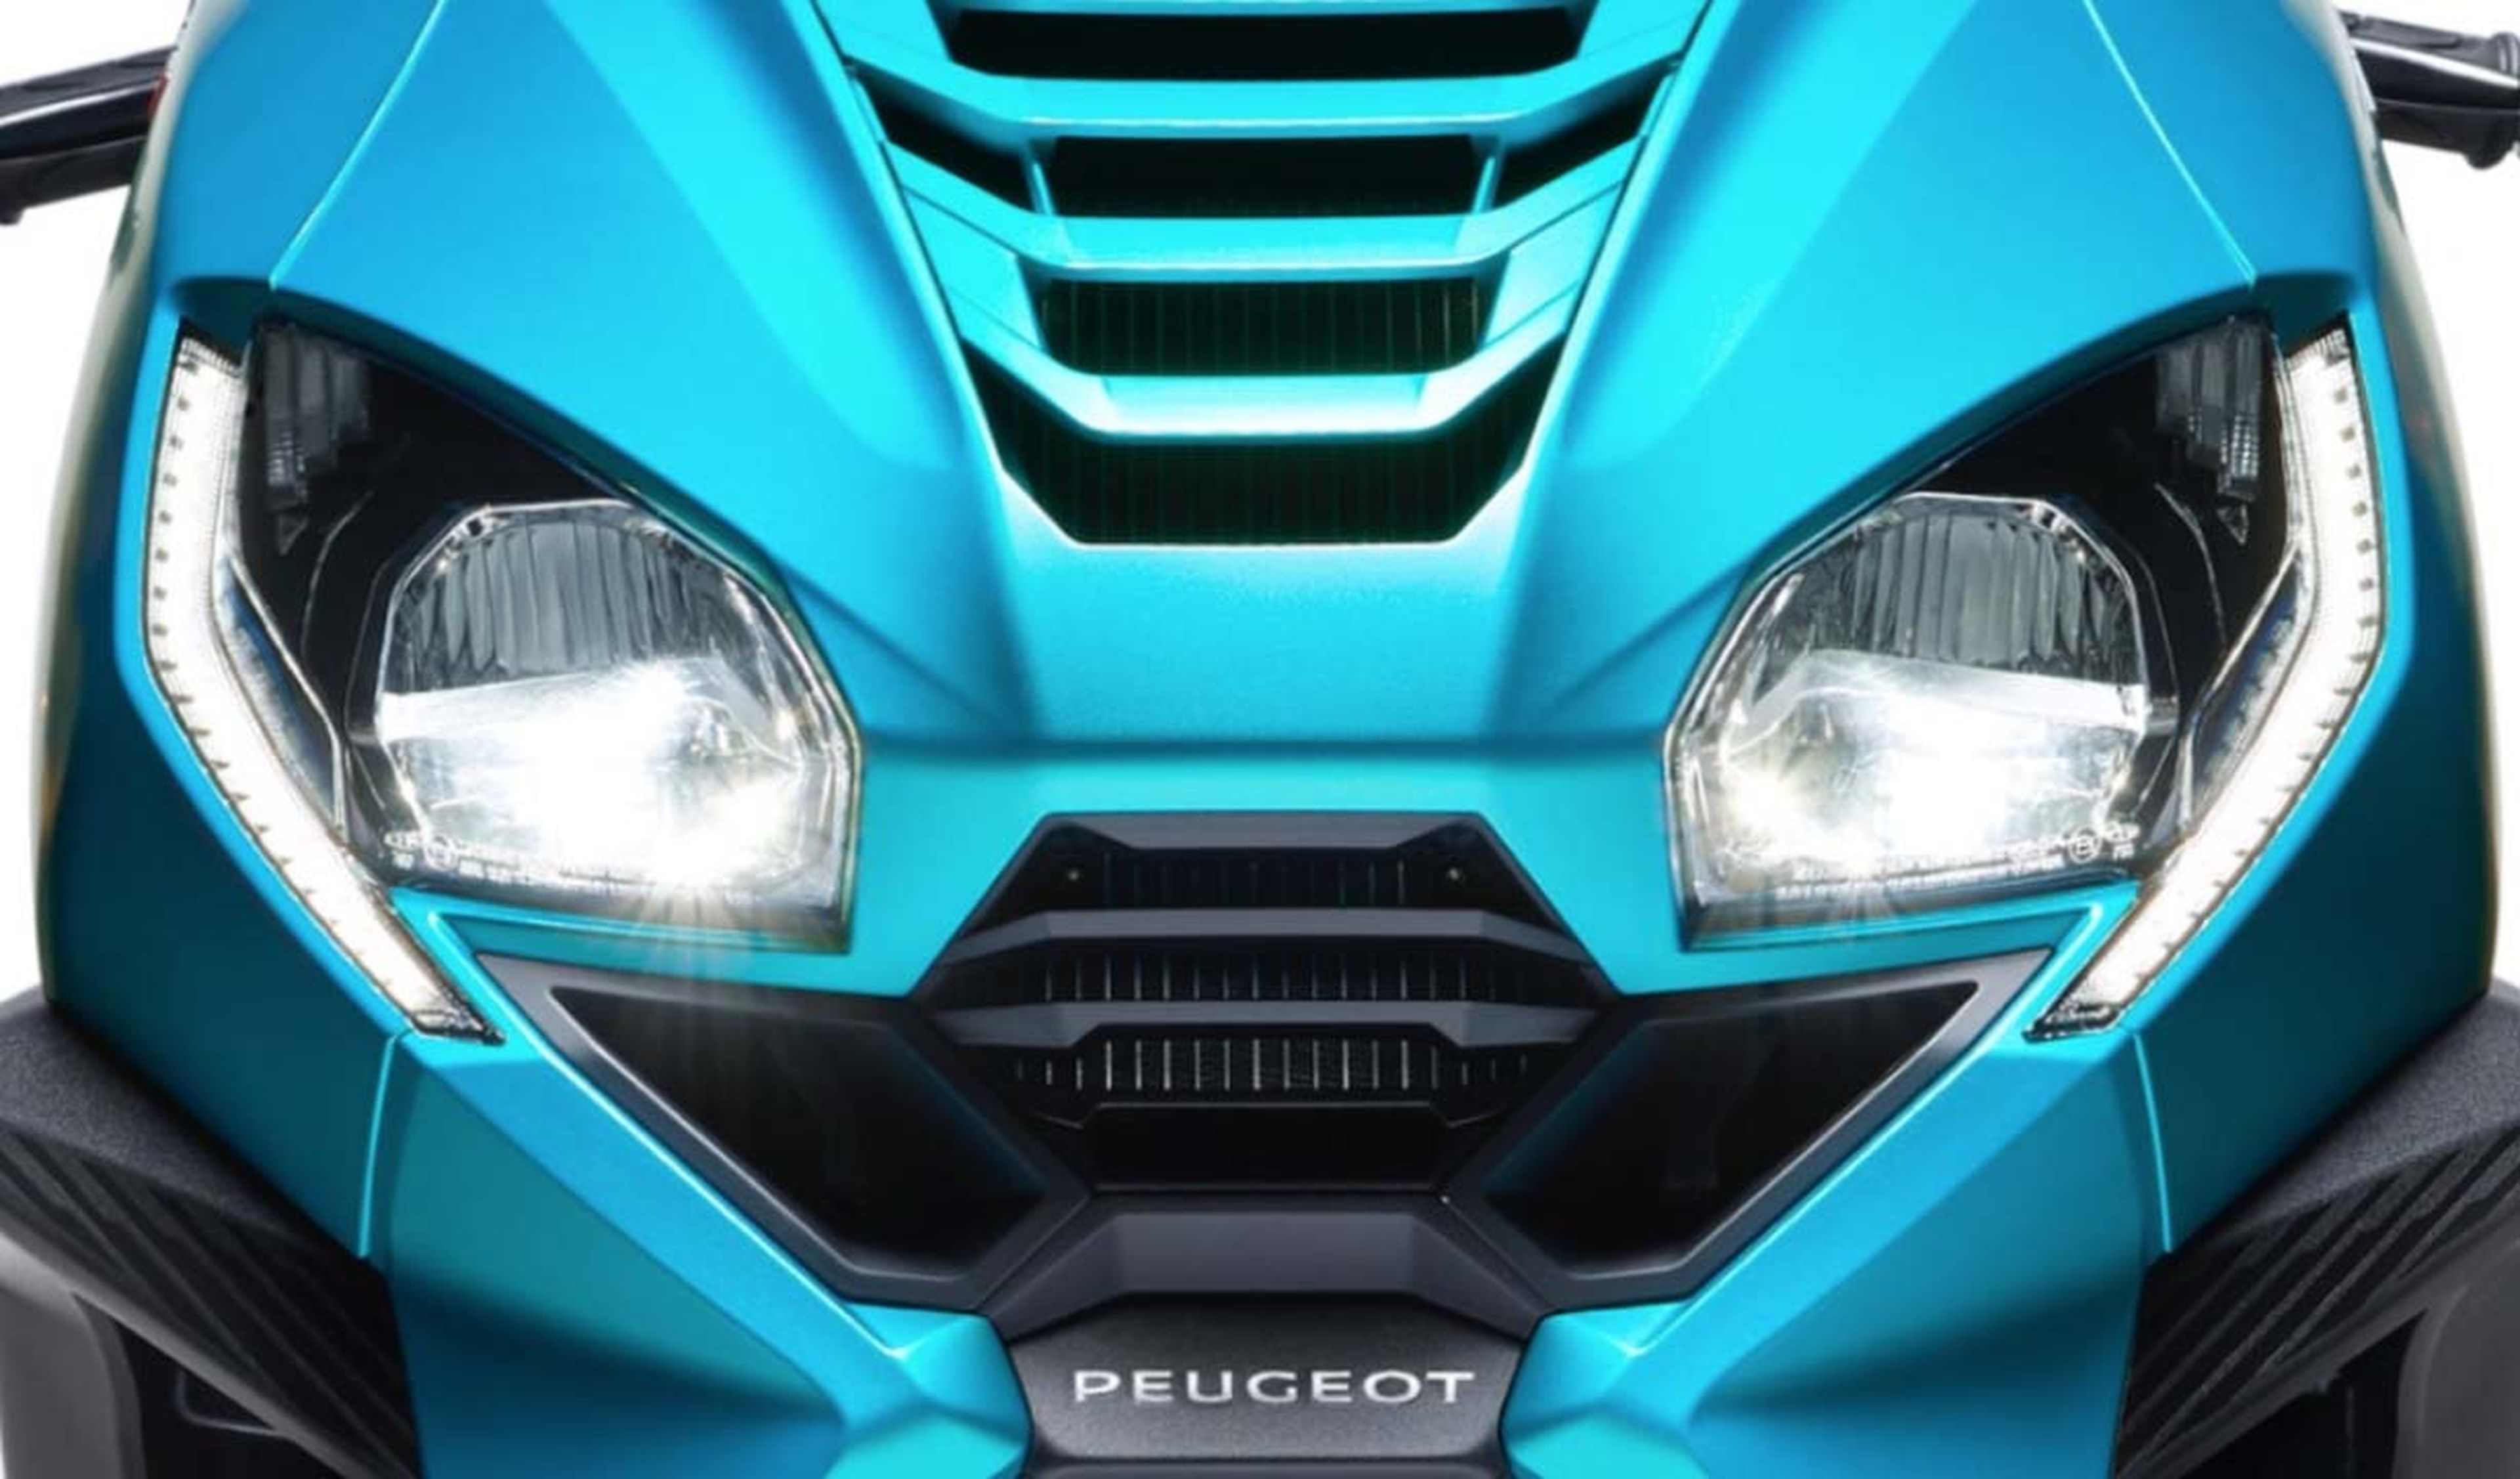 Prueba Peugeot Metropolis 400 2021